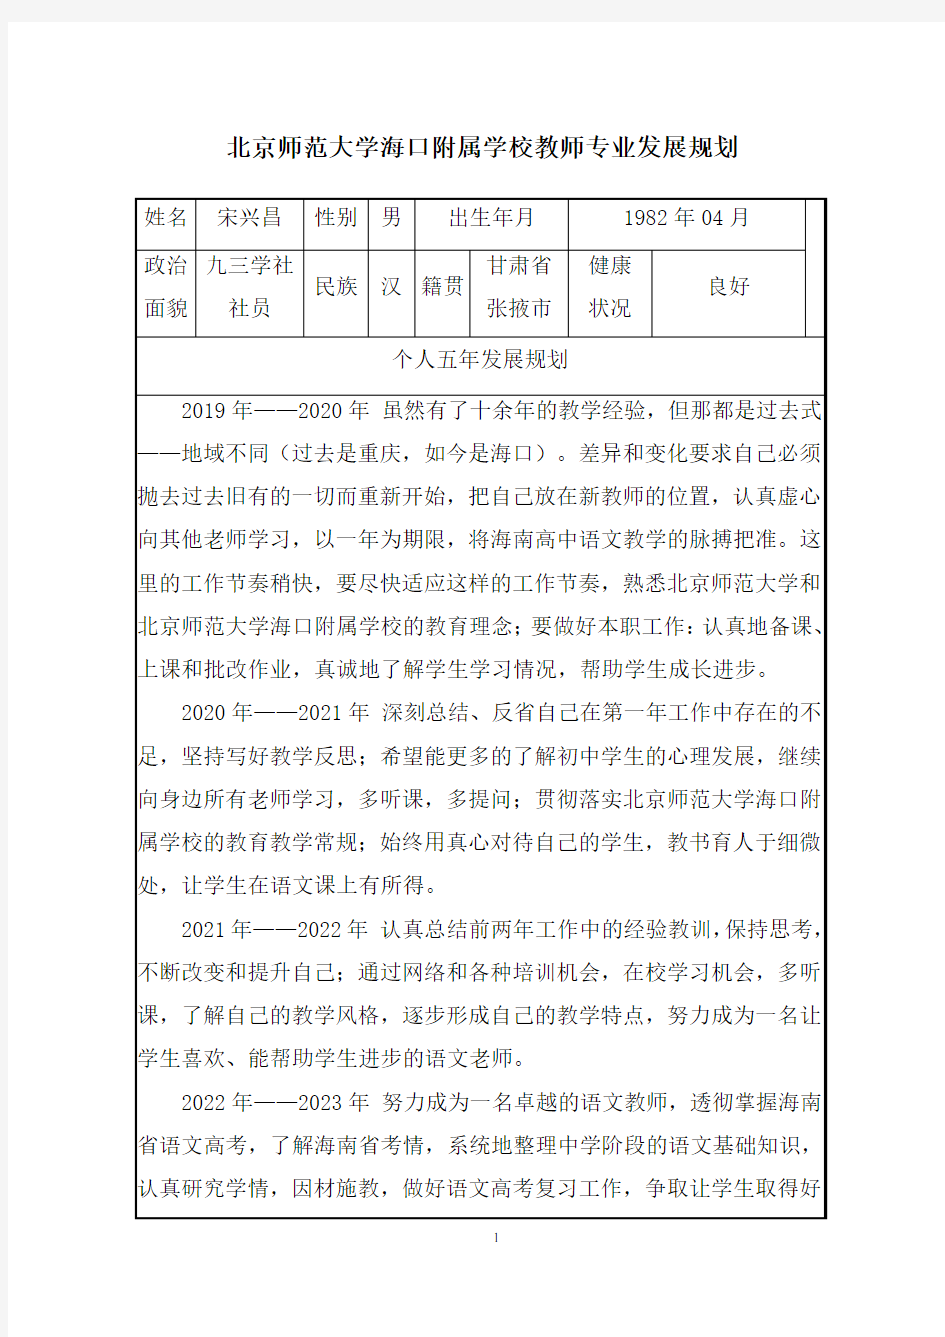 北京师范大学教师专业发展规划 - 副本